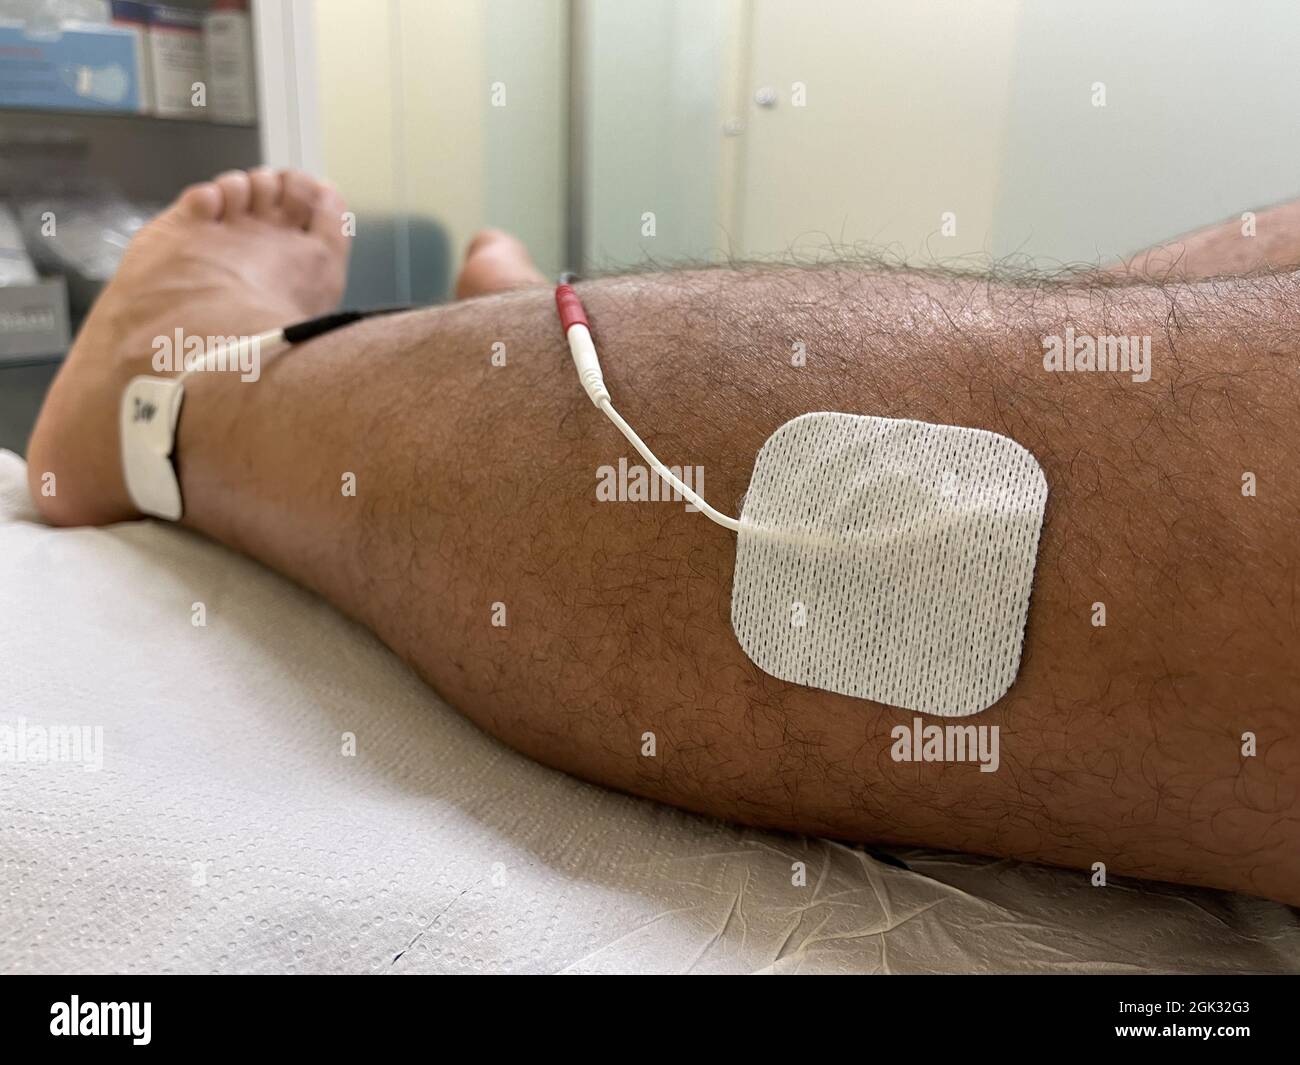 Nahaufnahme von zwei Elektroden, die auf das Bein des Mannes gelegt wurden, um überaktive Blasensymptome zu lindern Stockfoto